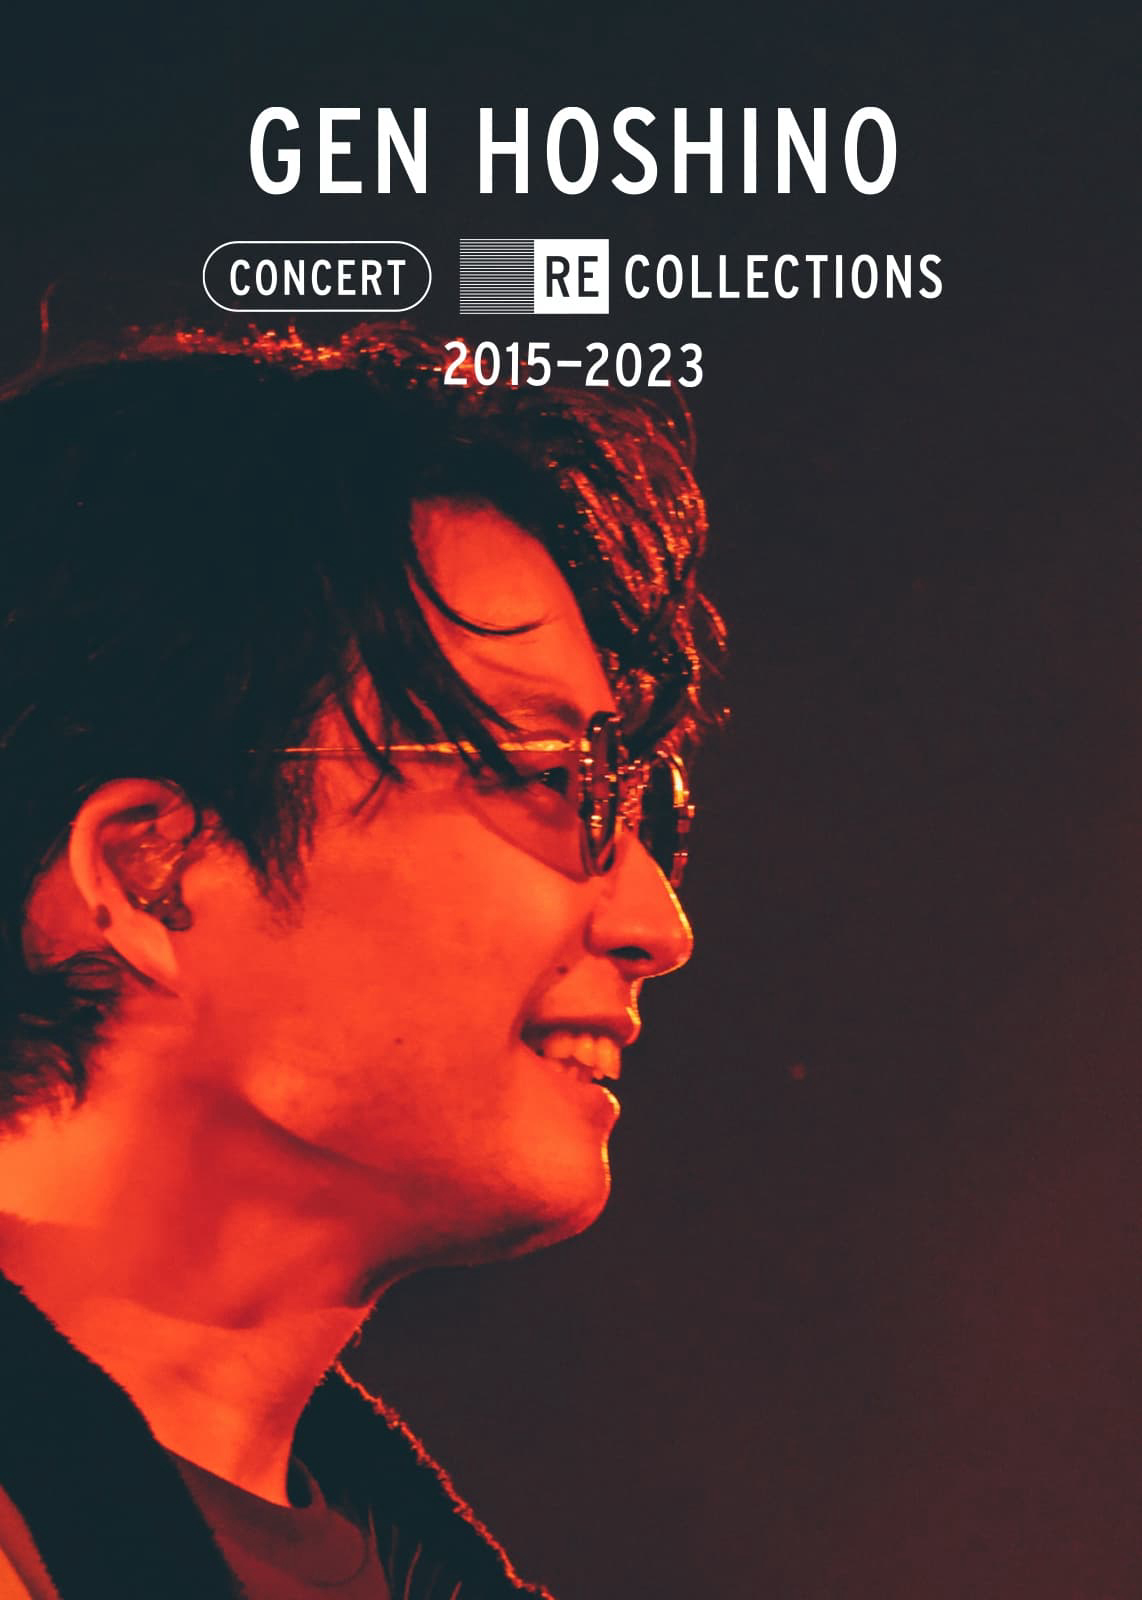 Poster Phim Hoshino Gen: Tuyển tập hòa nhạc 2015-2023 (Gen Hoshino Concert Recollections 2015-2023)